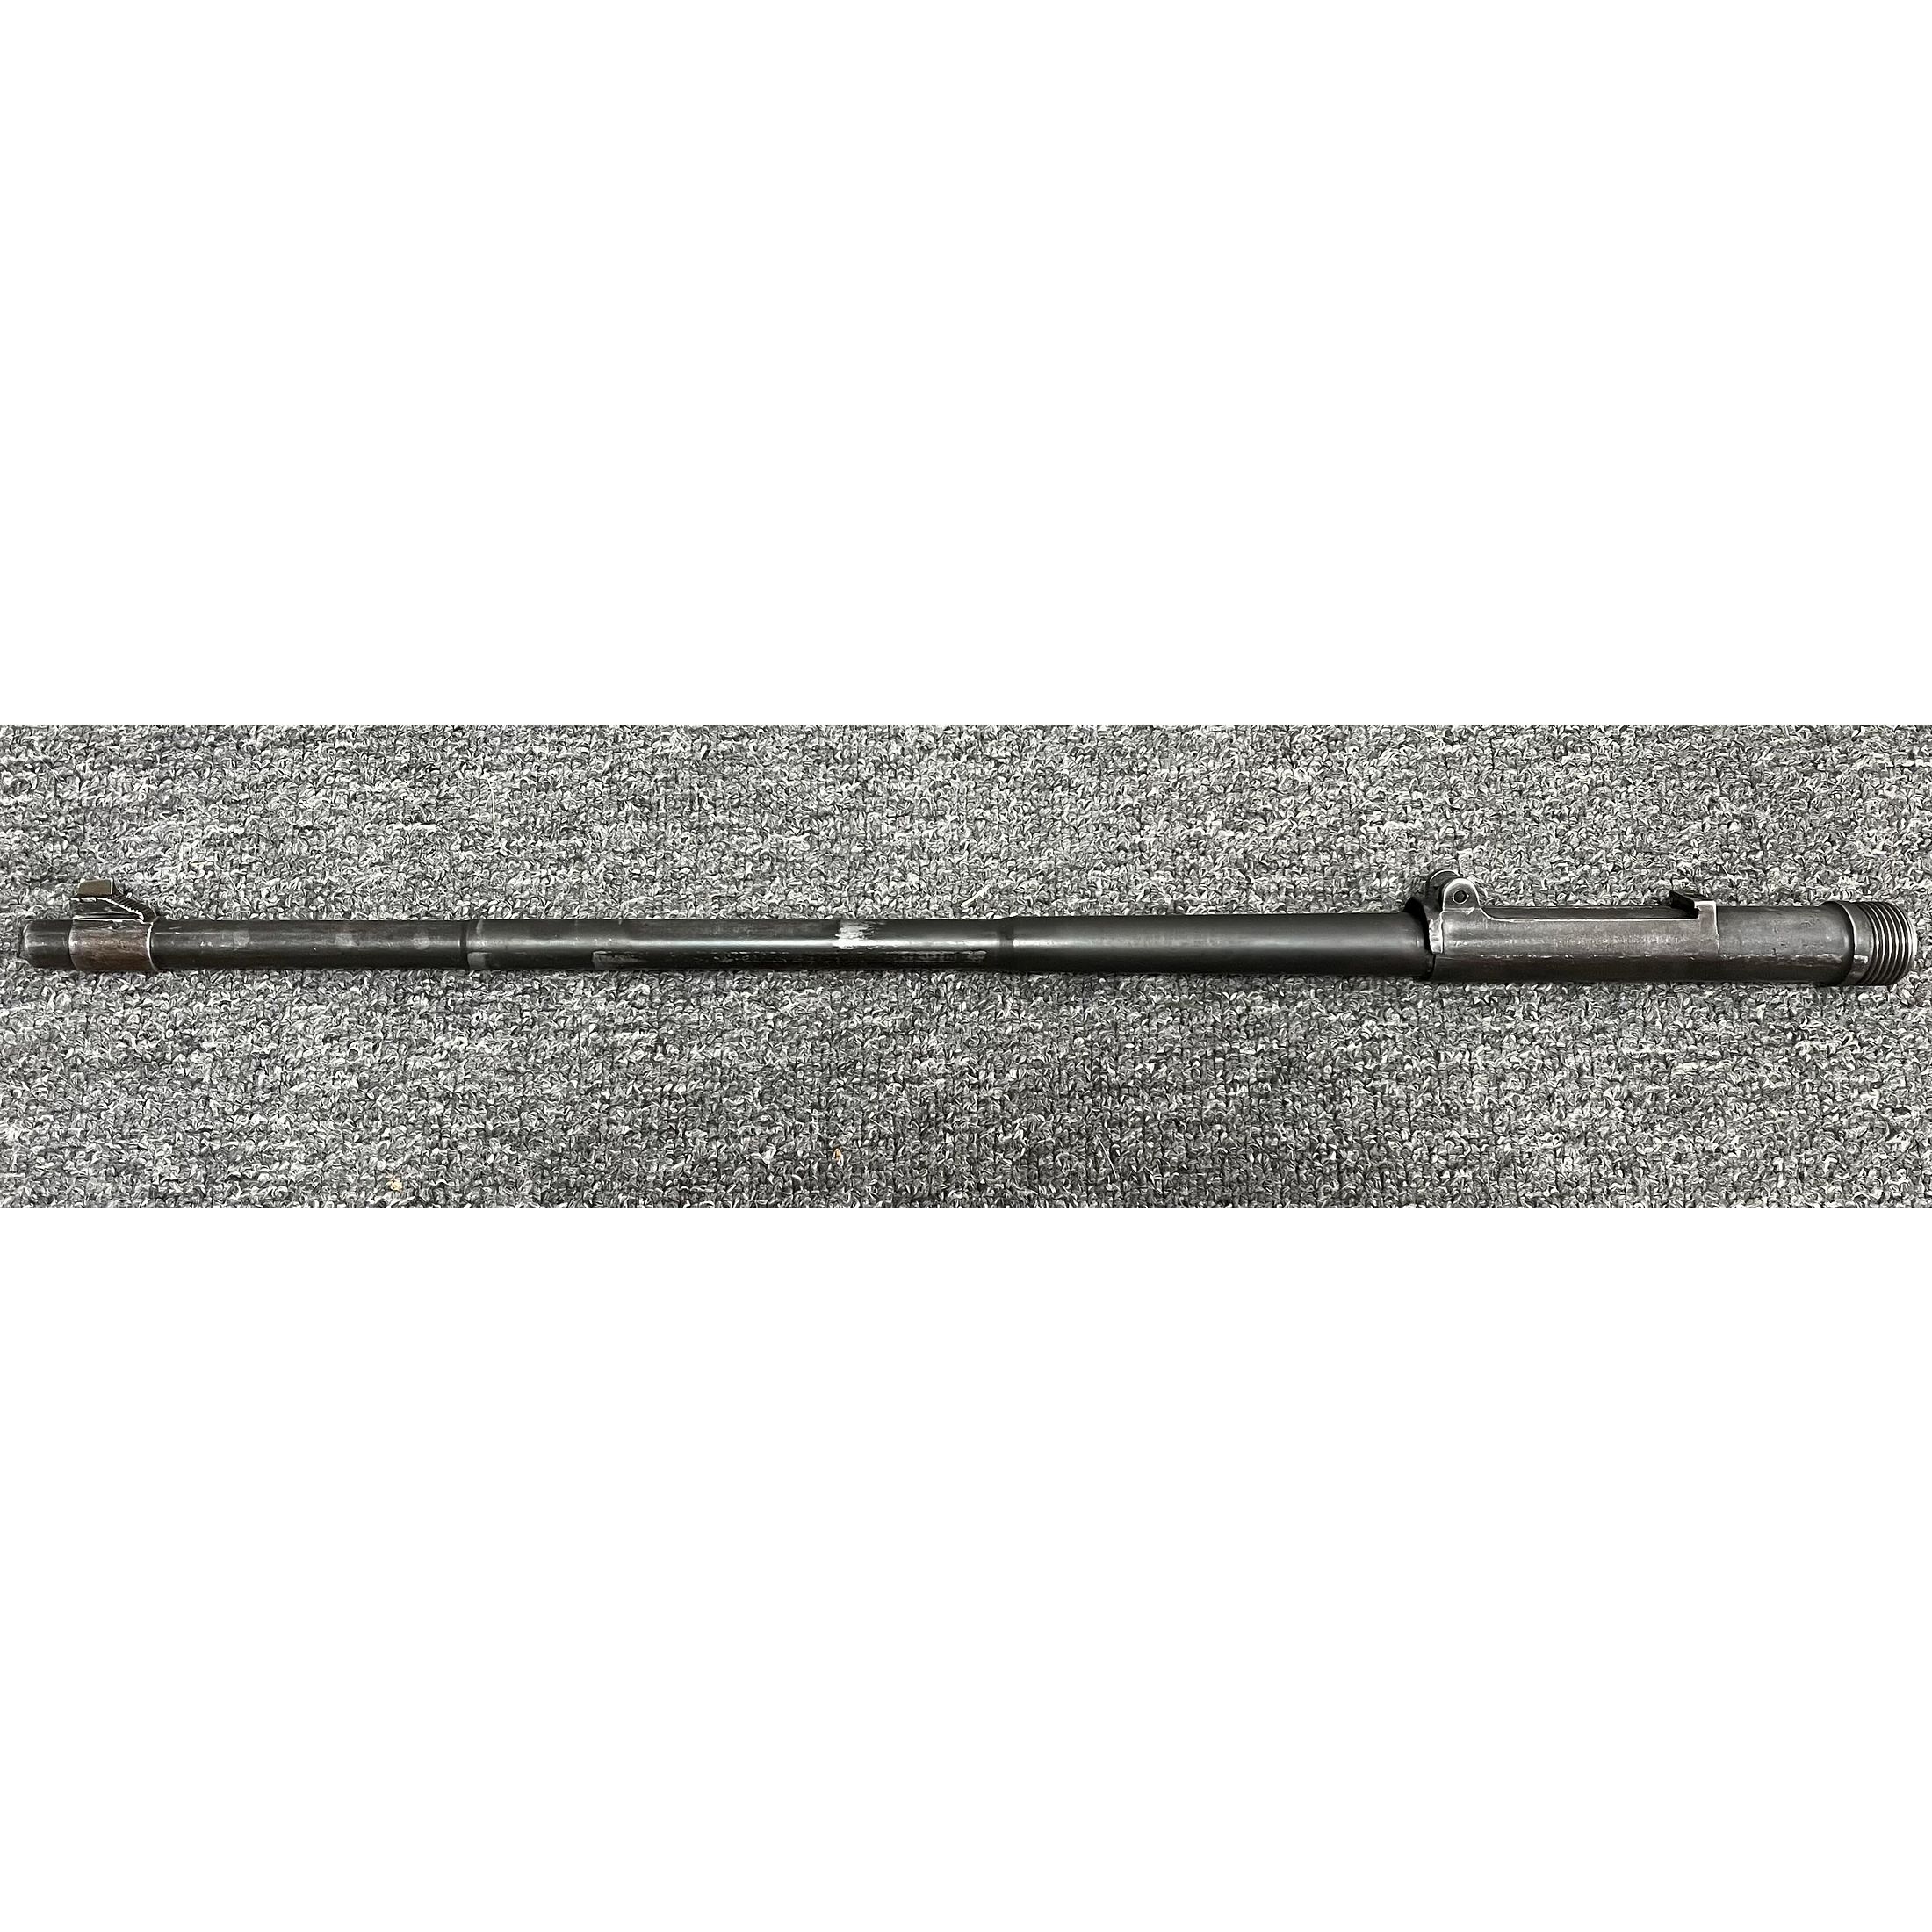 Mauser K98 Austauschlauf / Wechsellauf .308Win.